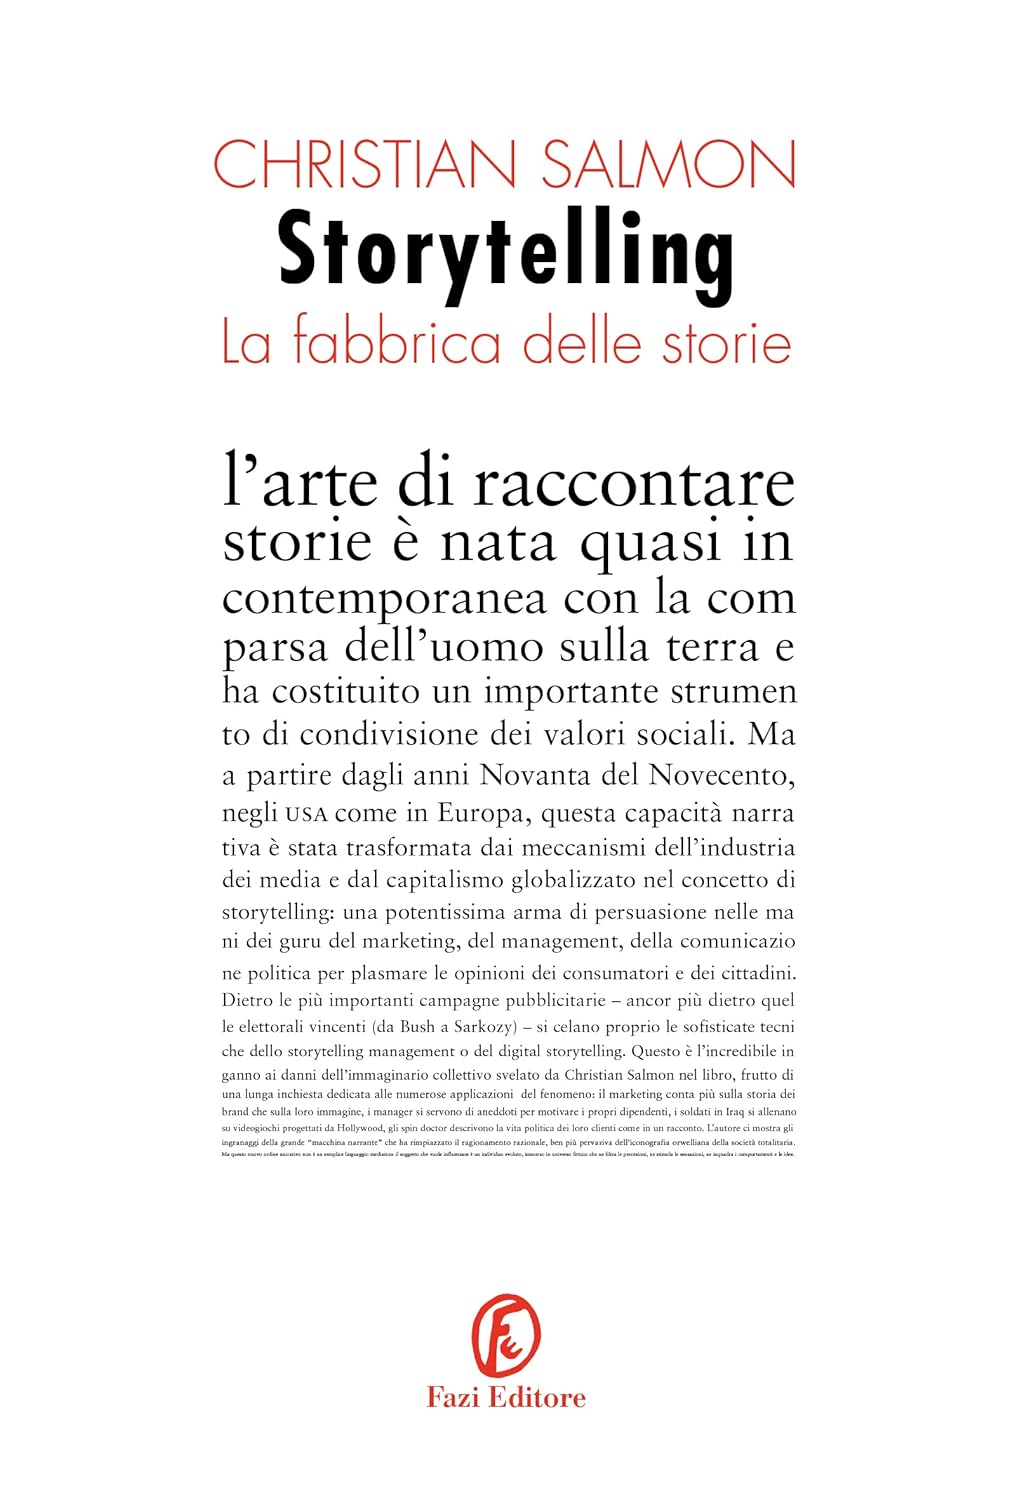 Christian Salmon: Storytelling (Italiano language, Fazi)